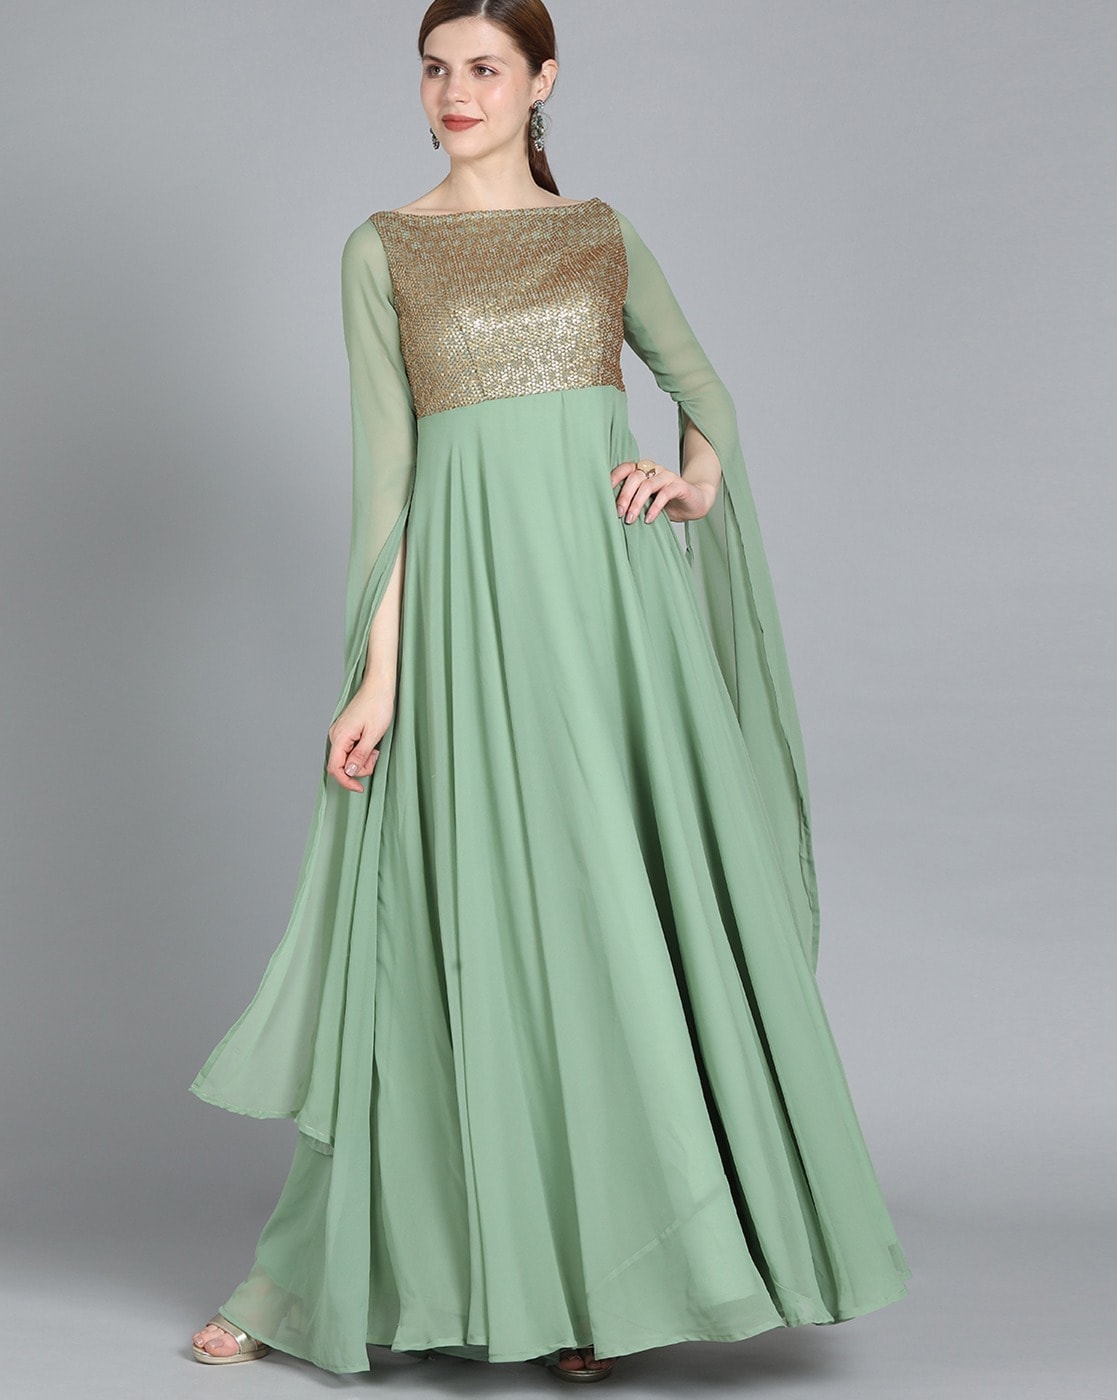 Trending Dark Green Color Designer Long Gown For Best Looks – Joshindia